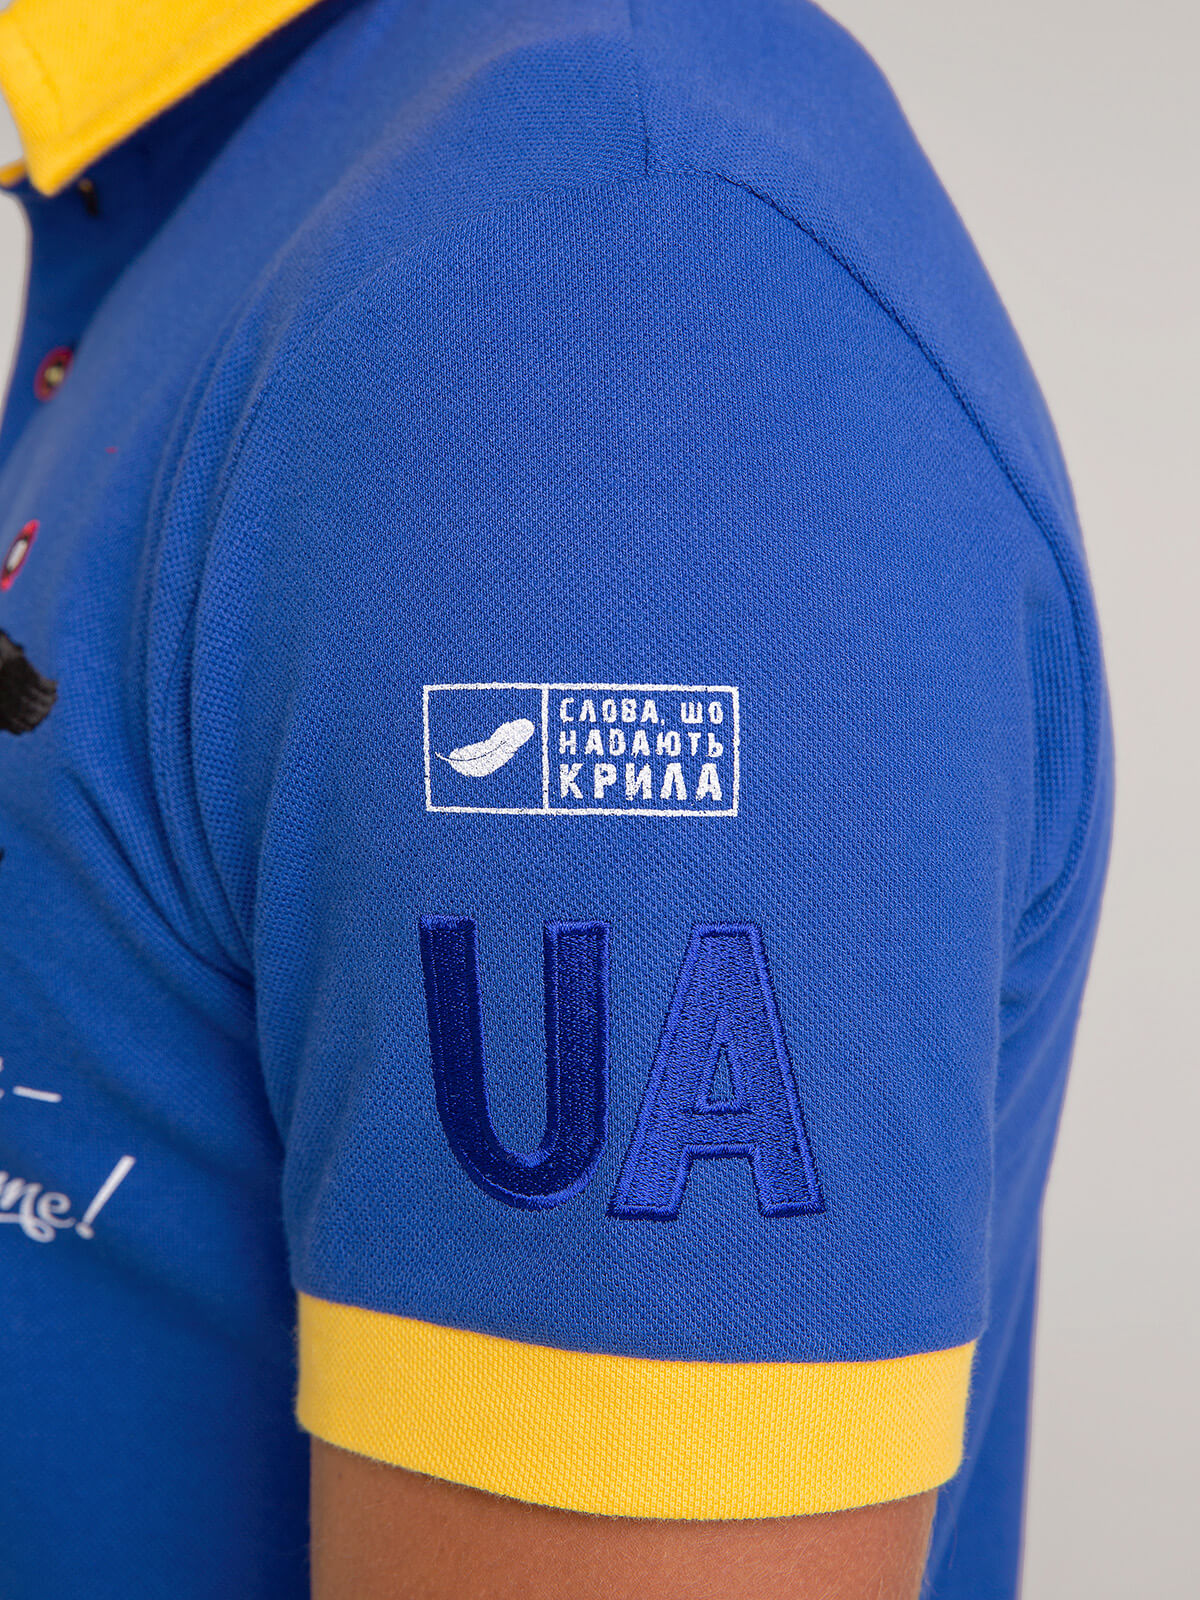 Men's Polo Shirt Taras Shevchenko. Color navy blue. 3.